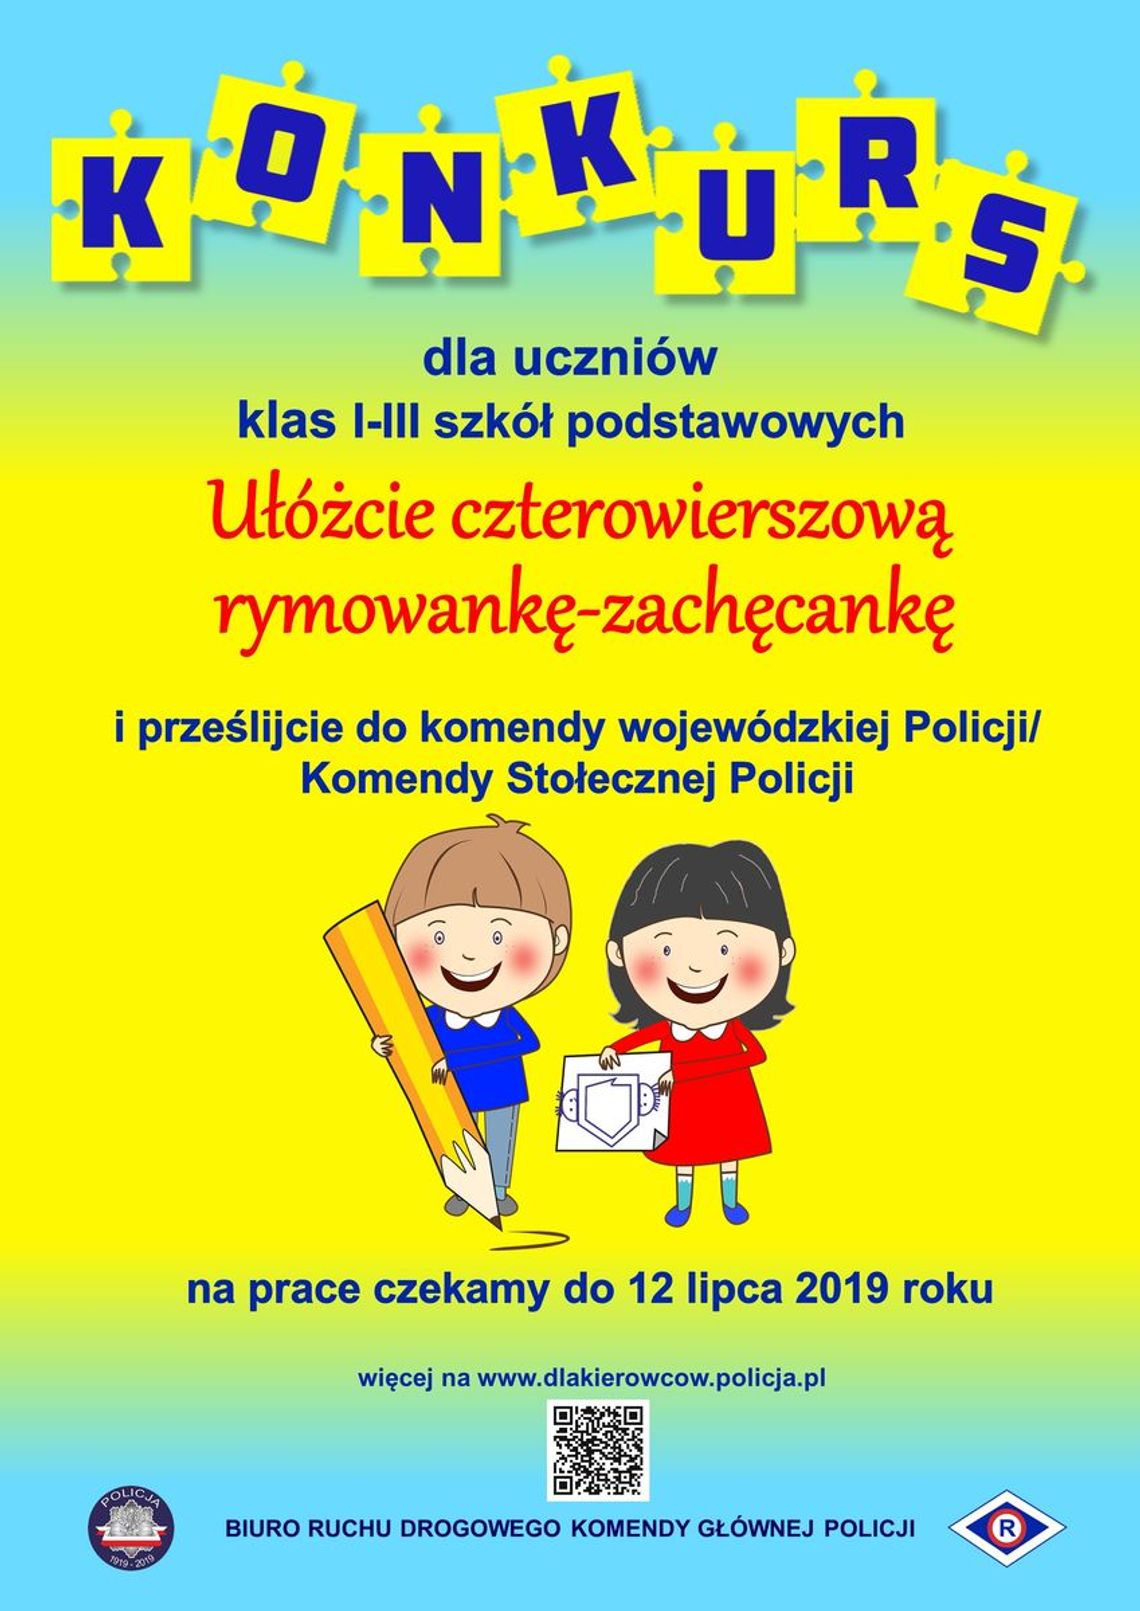 Konkurs literacki dla uczniów klas I -III Szkół Podstawowych pn. "RYMOWANKA - Zachęcanka"